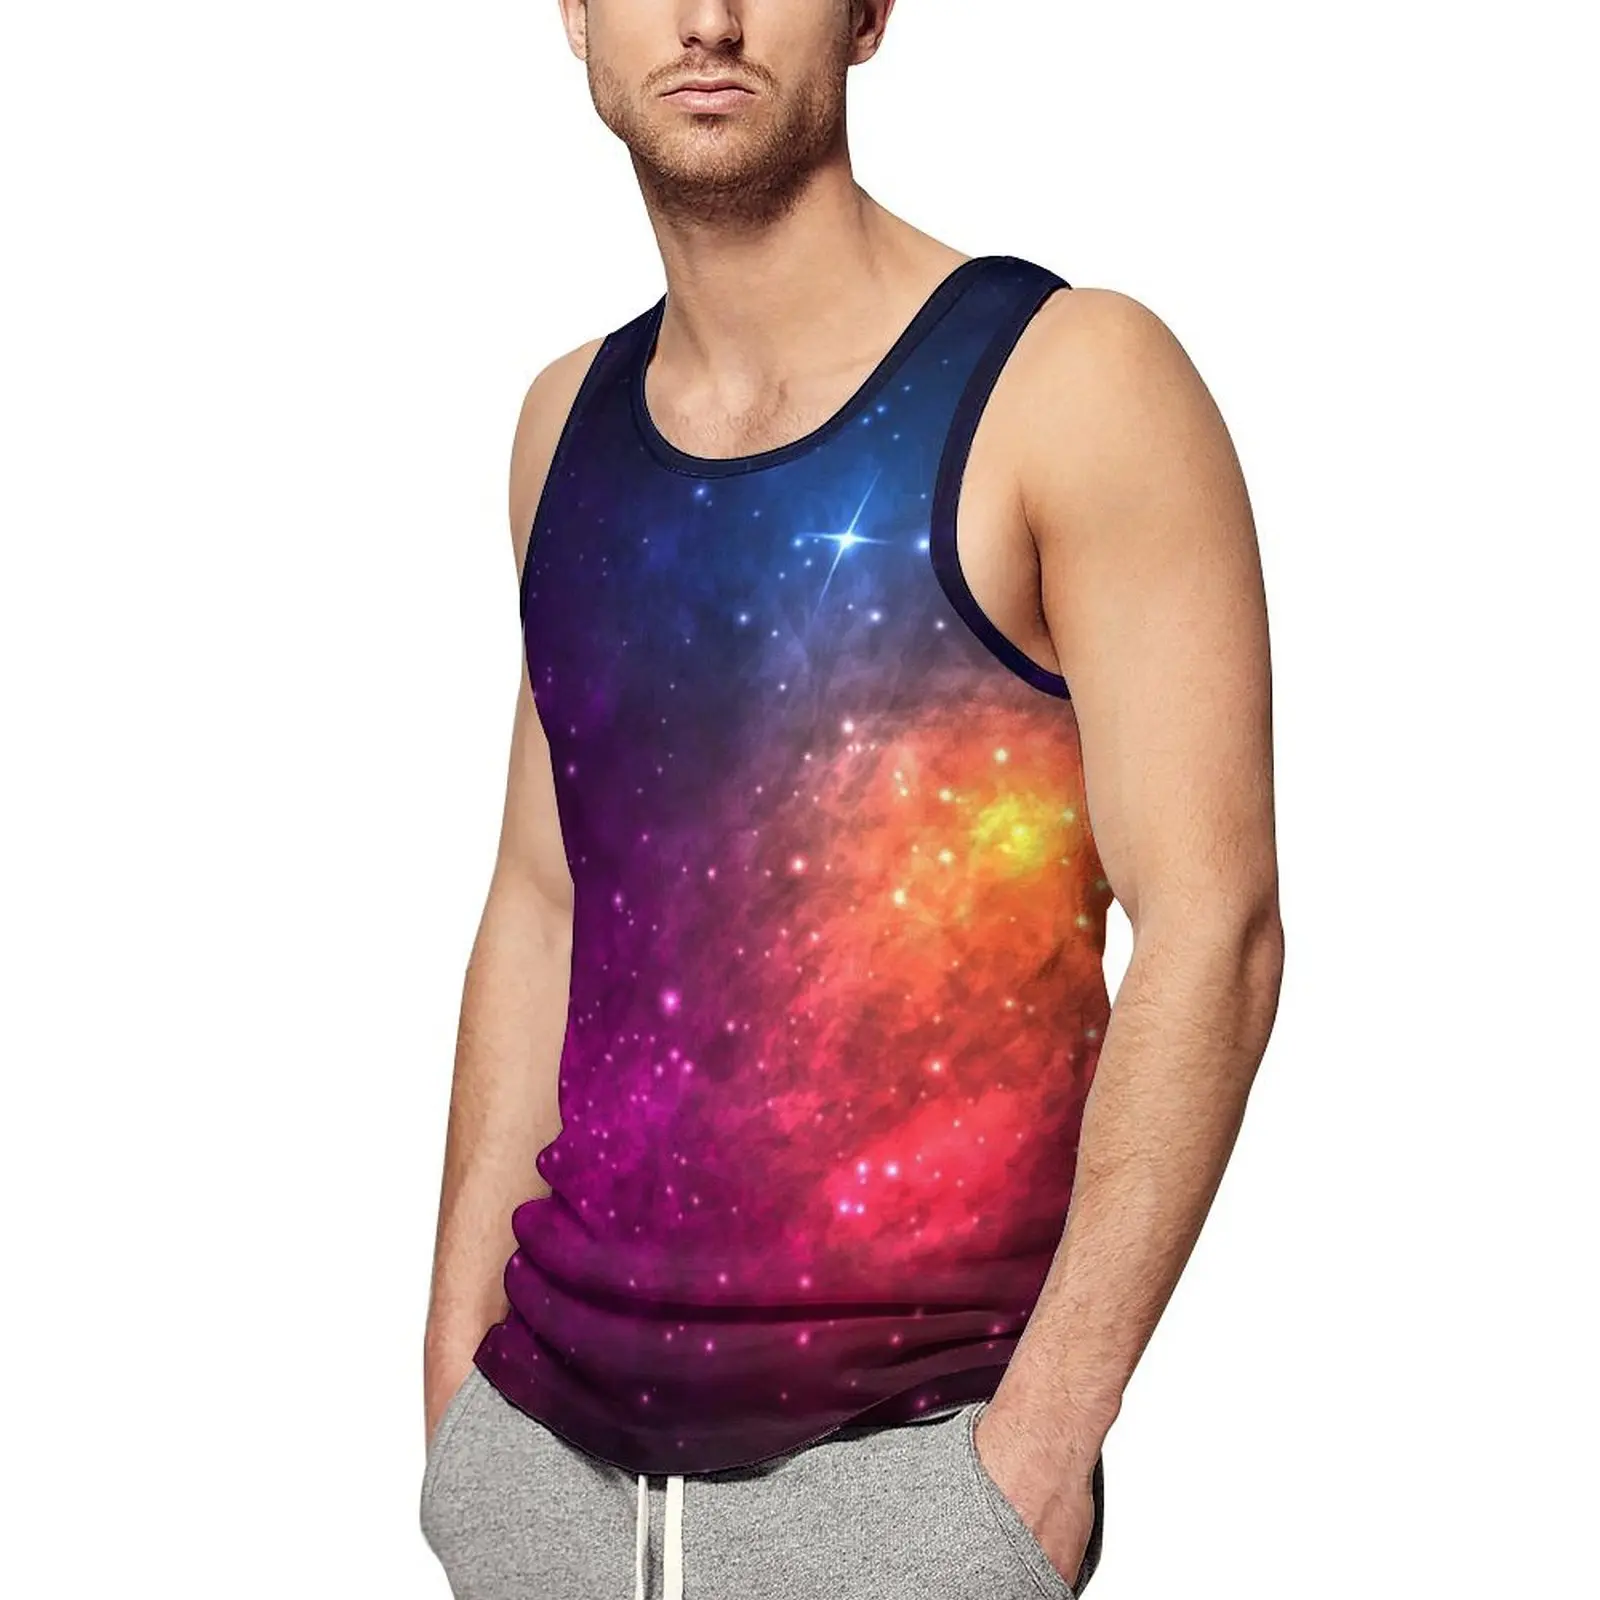 

Красочный Топ Galaxy, мужские топы для тренировок со звездами и туманностями, топы большого размера, пляжные жилеты без рукавов с графическим рисунком мышц